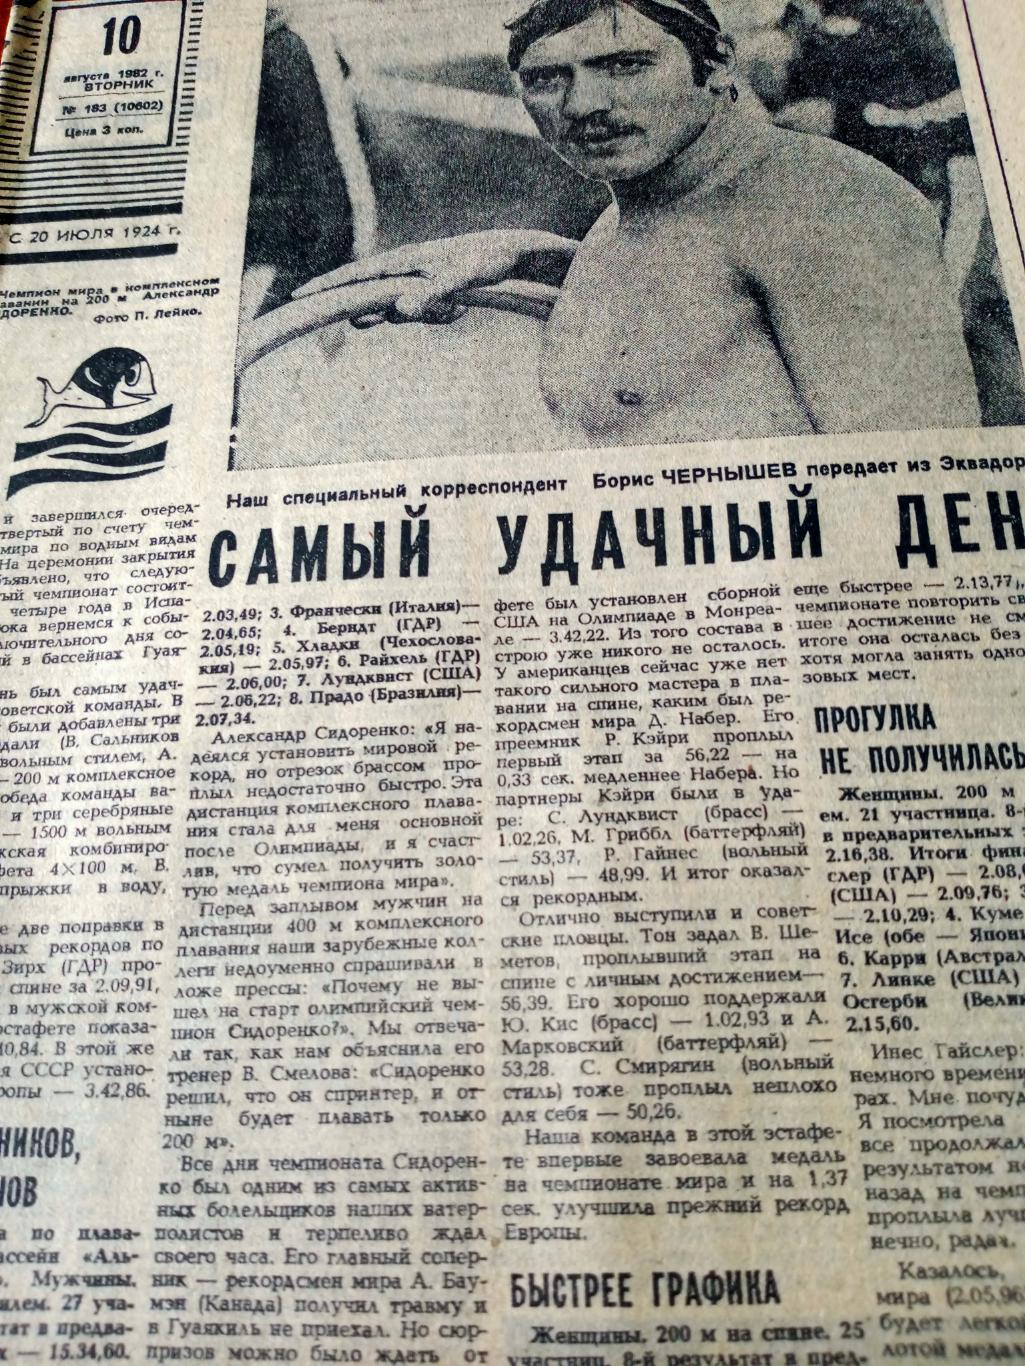 Большой футбольный выпуск. Советский спорт. 1982 год. 10 августа